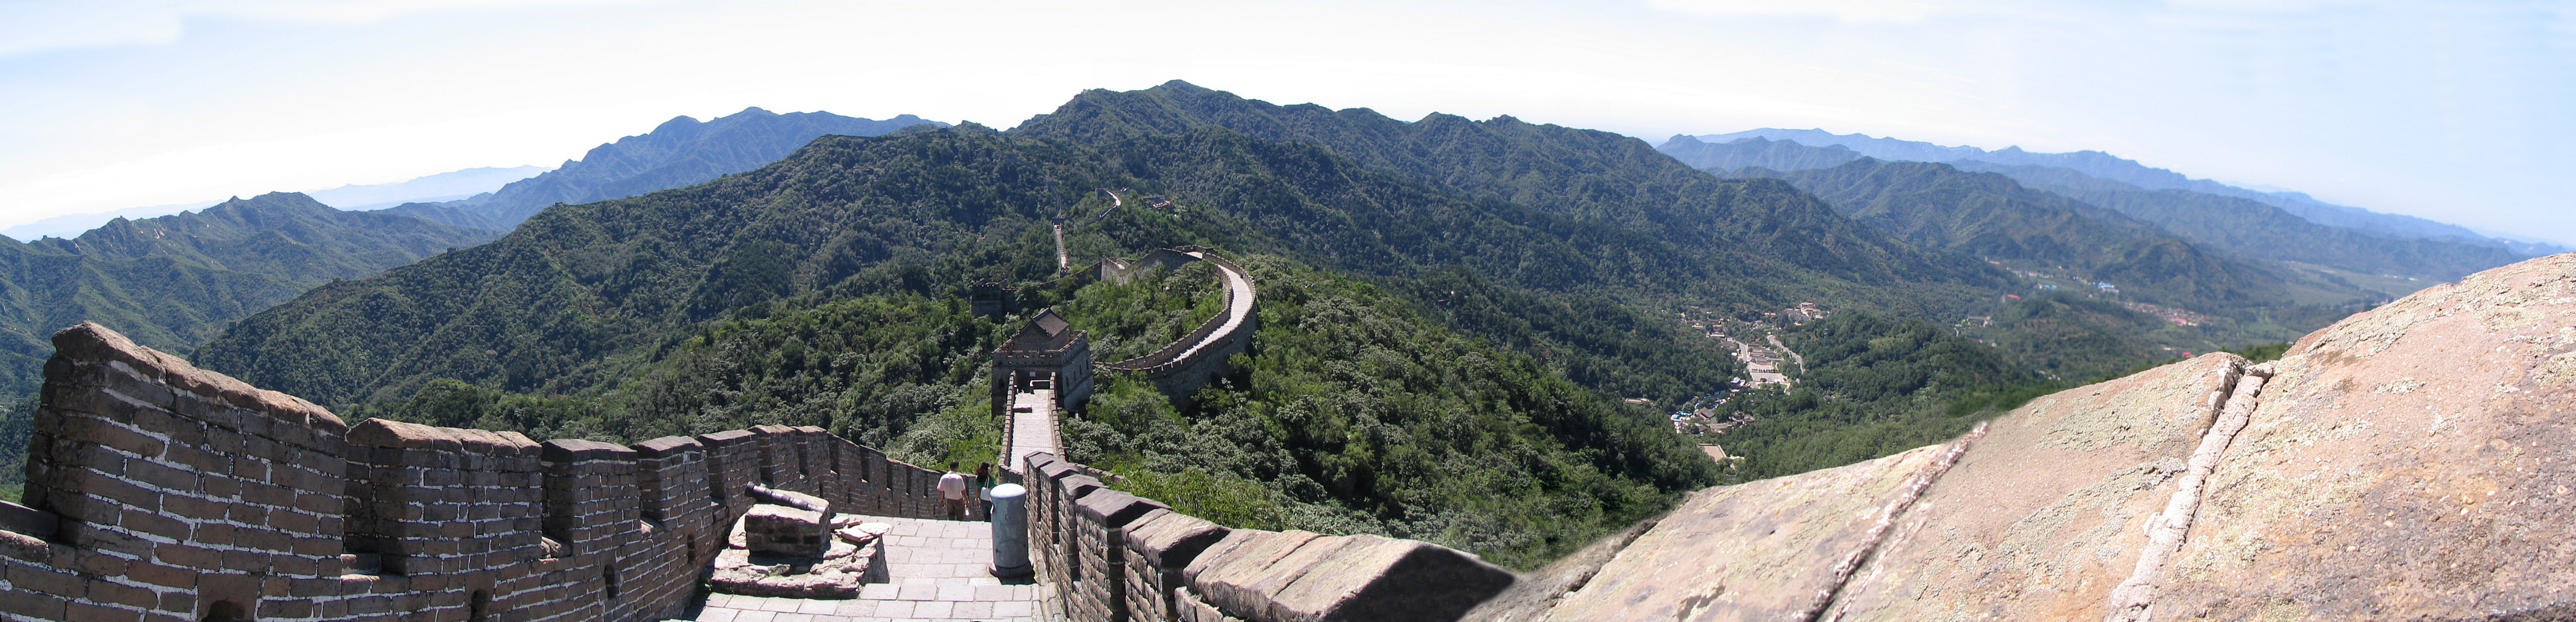 Panorama-Chinesische-Mauer-Mutianyu Martin.jpg